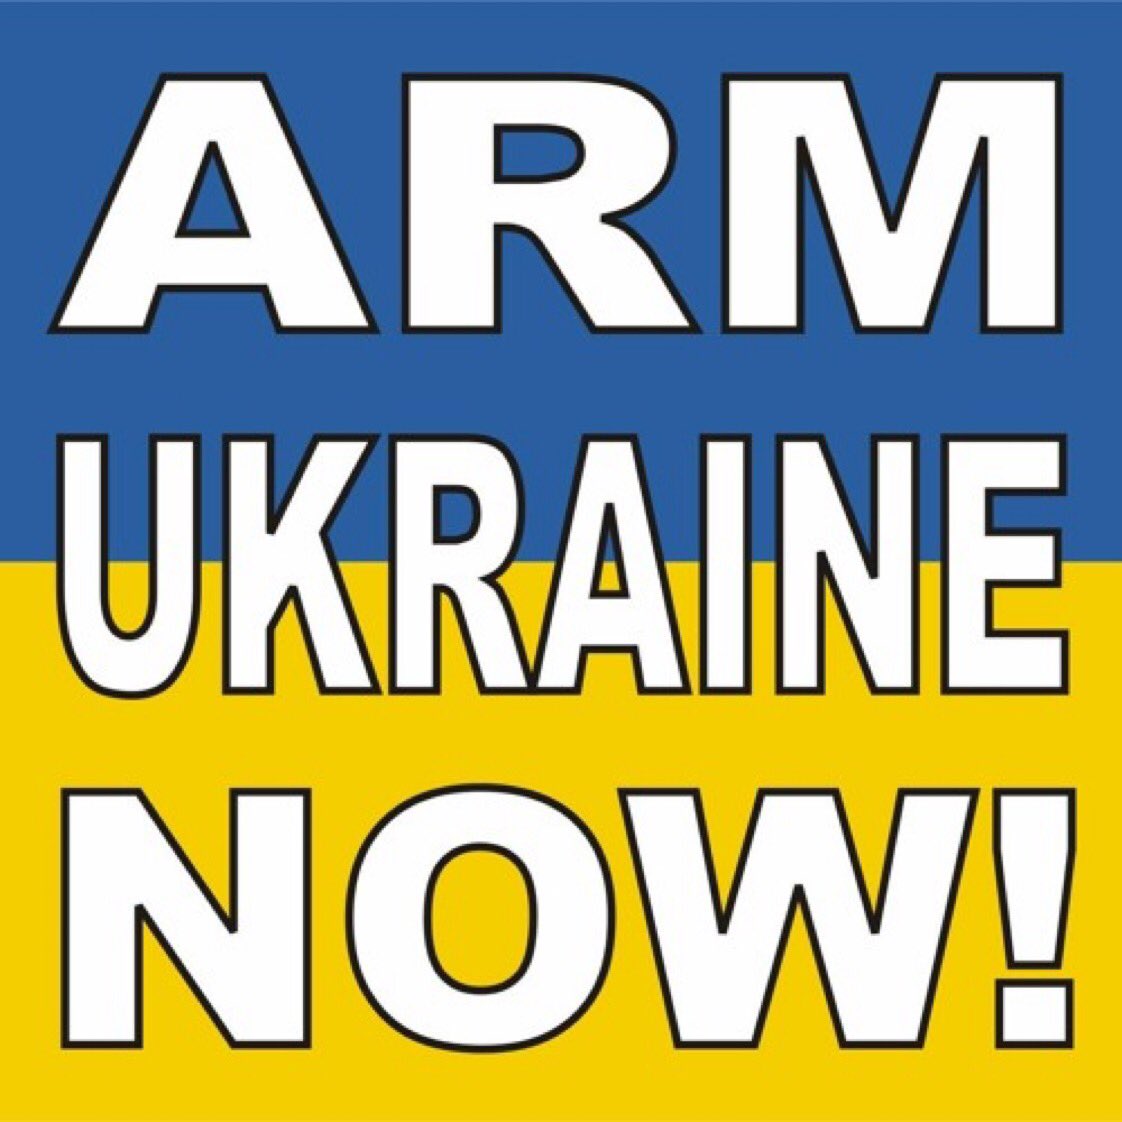 @Gerashchenko_en #PassUkraineAidNOW 
#DefendDemocracyAidUkraine 

Stand With Ukraine 🇺🇸🤝🇺🇦